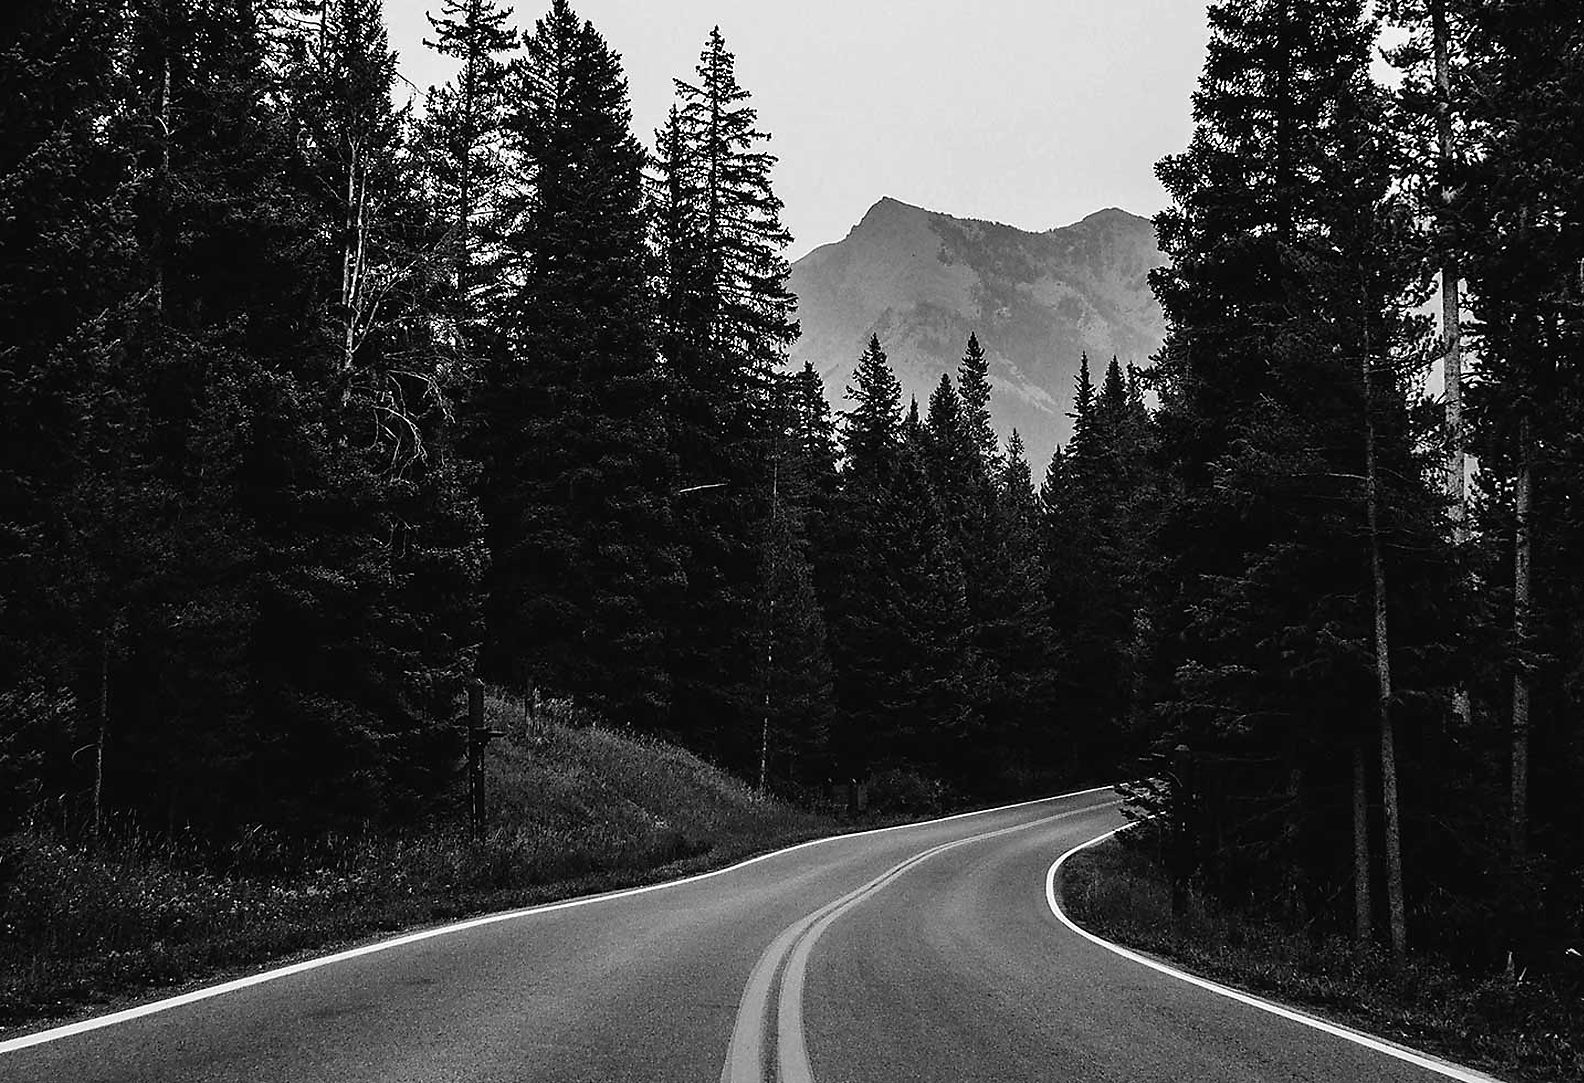 Čierno-biely obraz cesty so zatáčkami, okolo ktorej sú stromy a kopec v pozadí